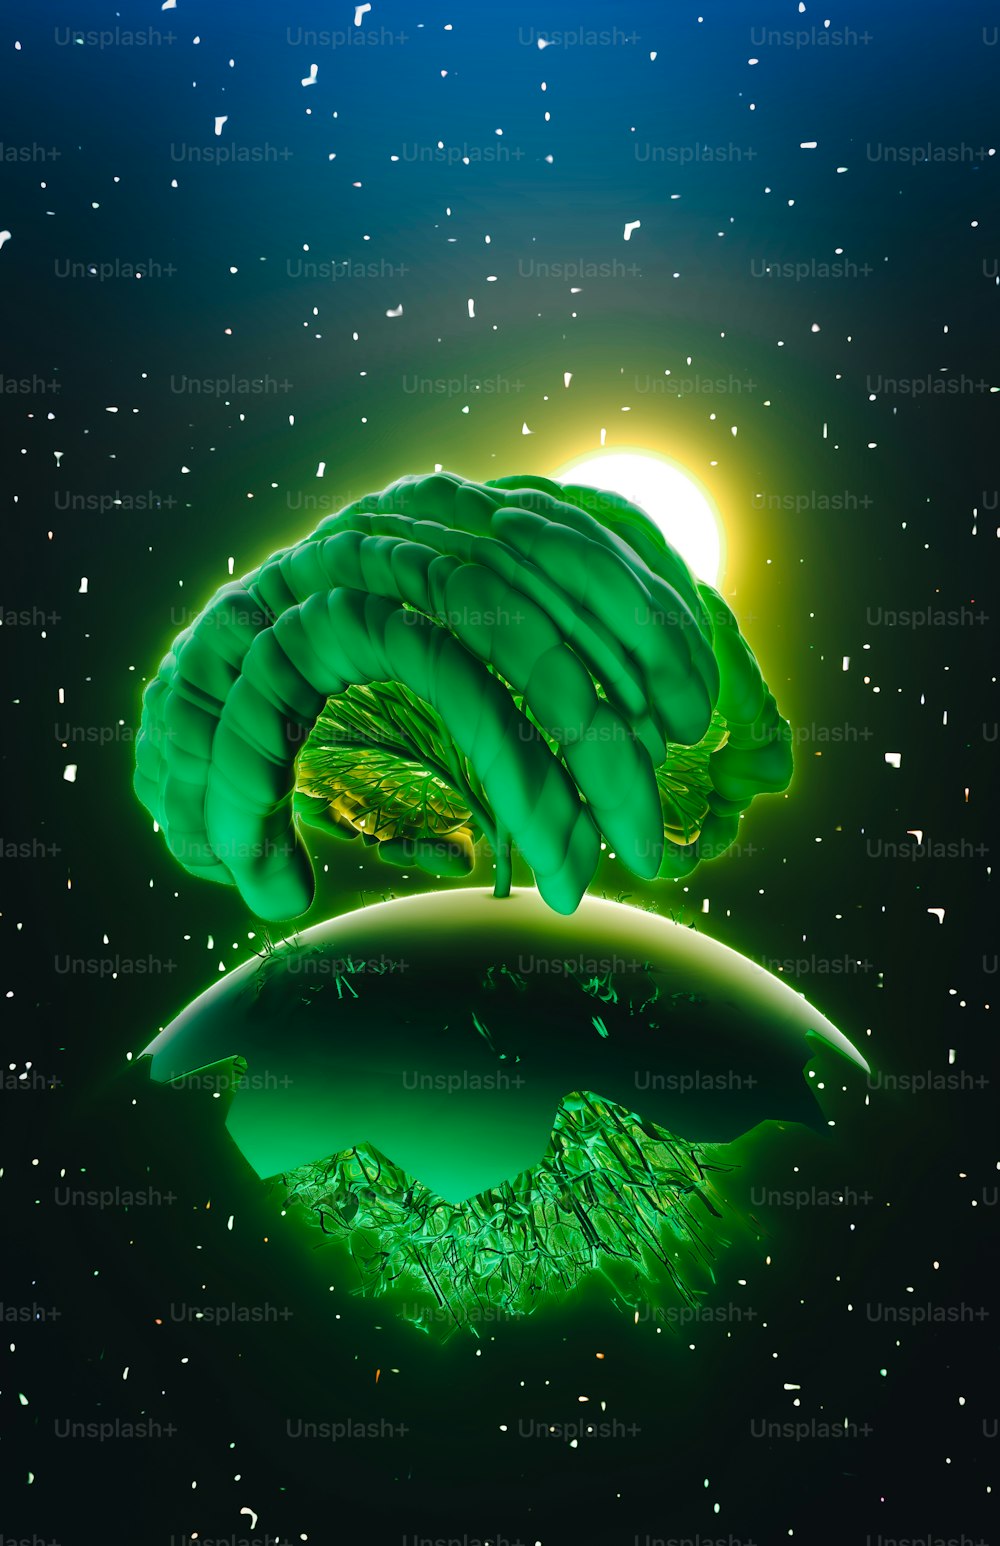 Un'immagine di un oggetto verde che fluttua nell'aria